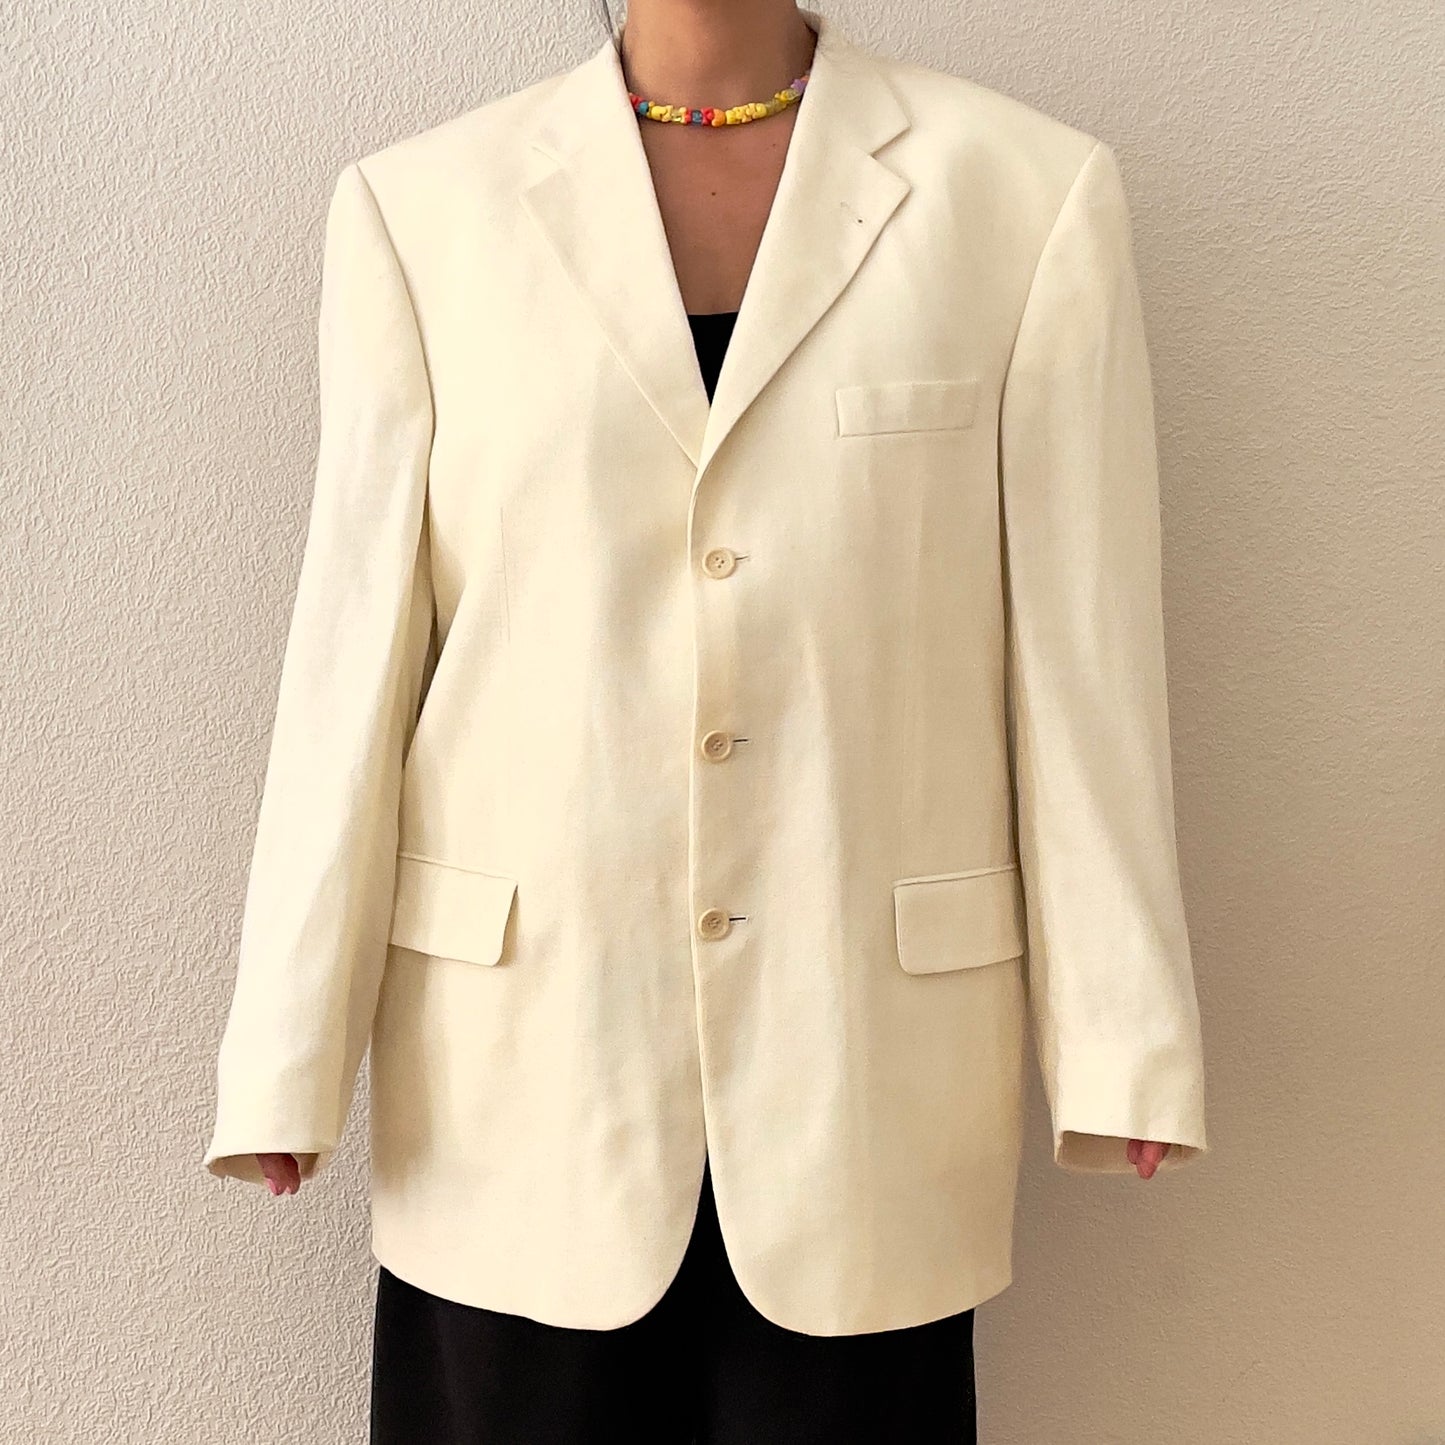 Off White Wool/Silk Blazer - Menswear